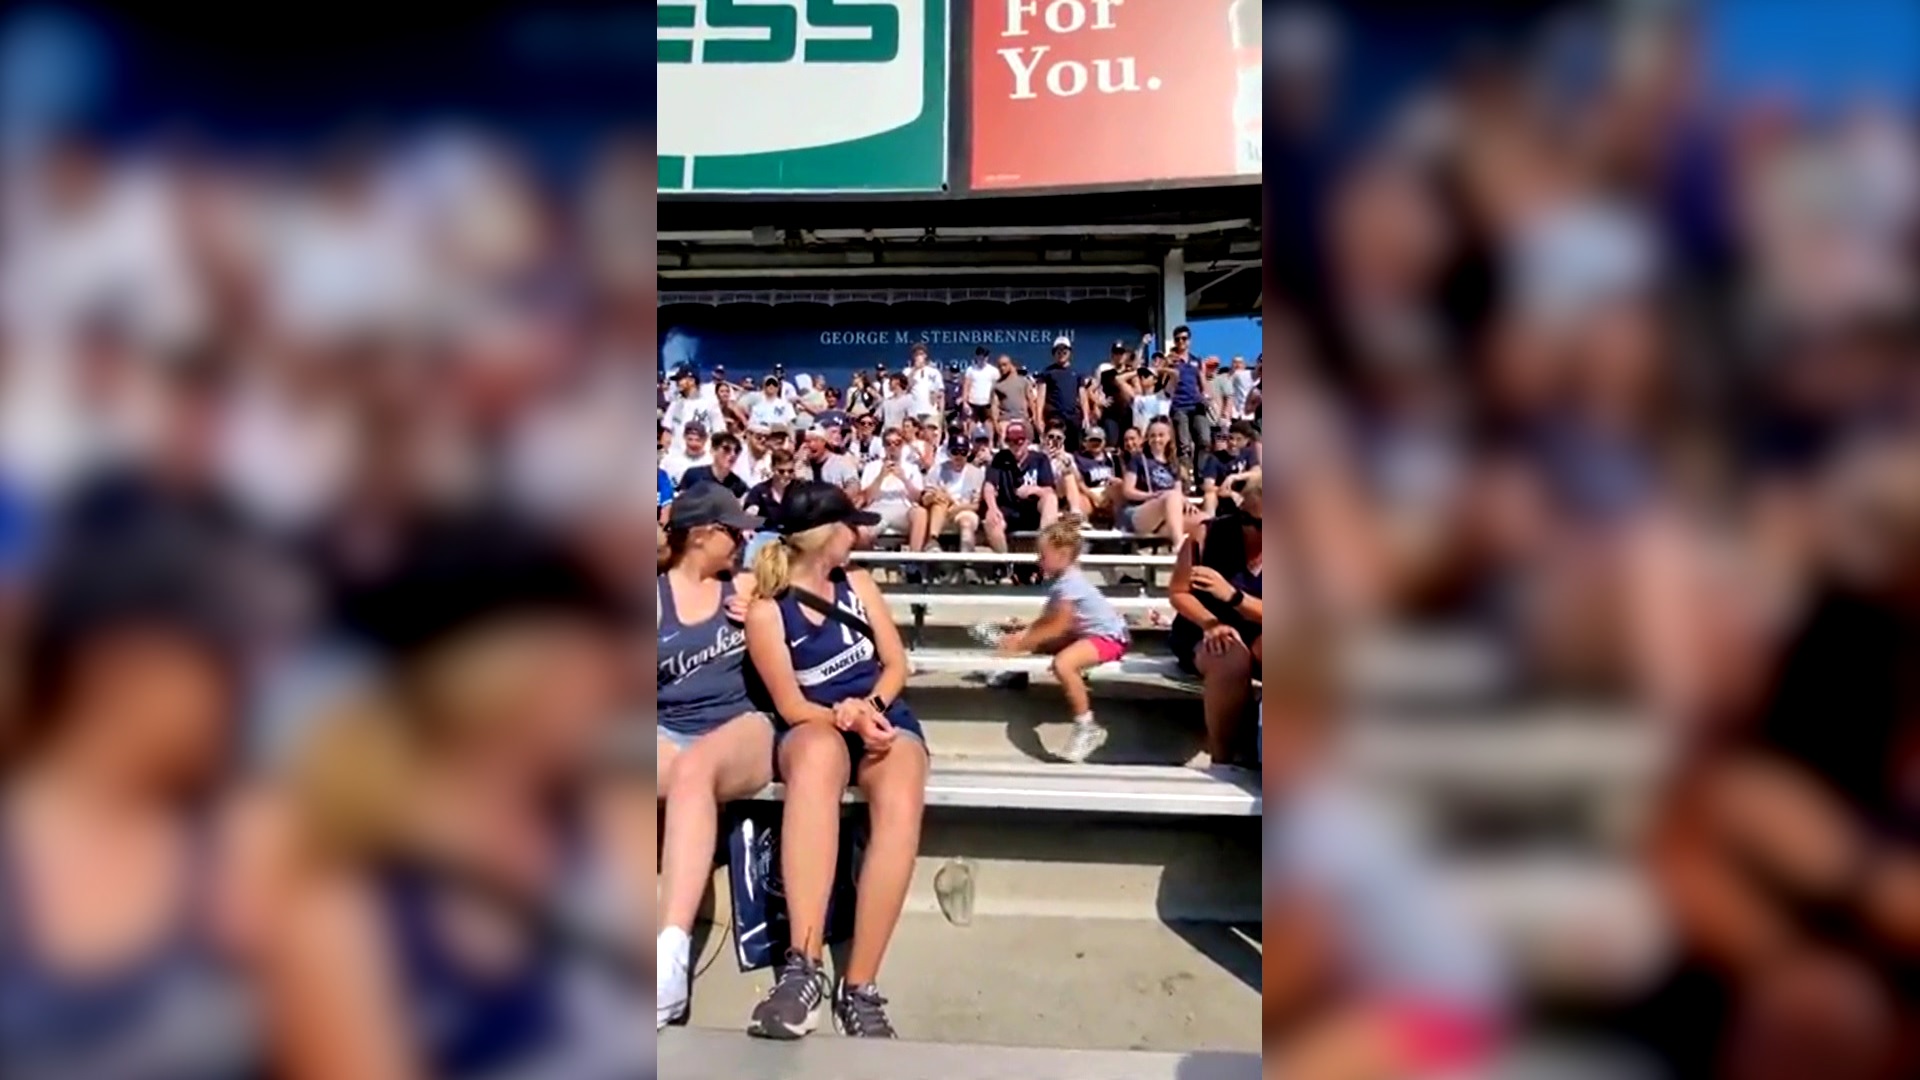 Bucurie mare în tribune! O fetiță de câțiva ani le-a atras atentia tuturor la un meci de baseball